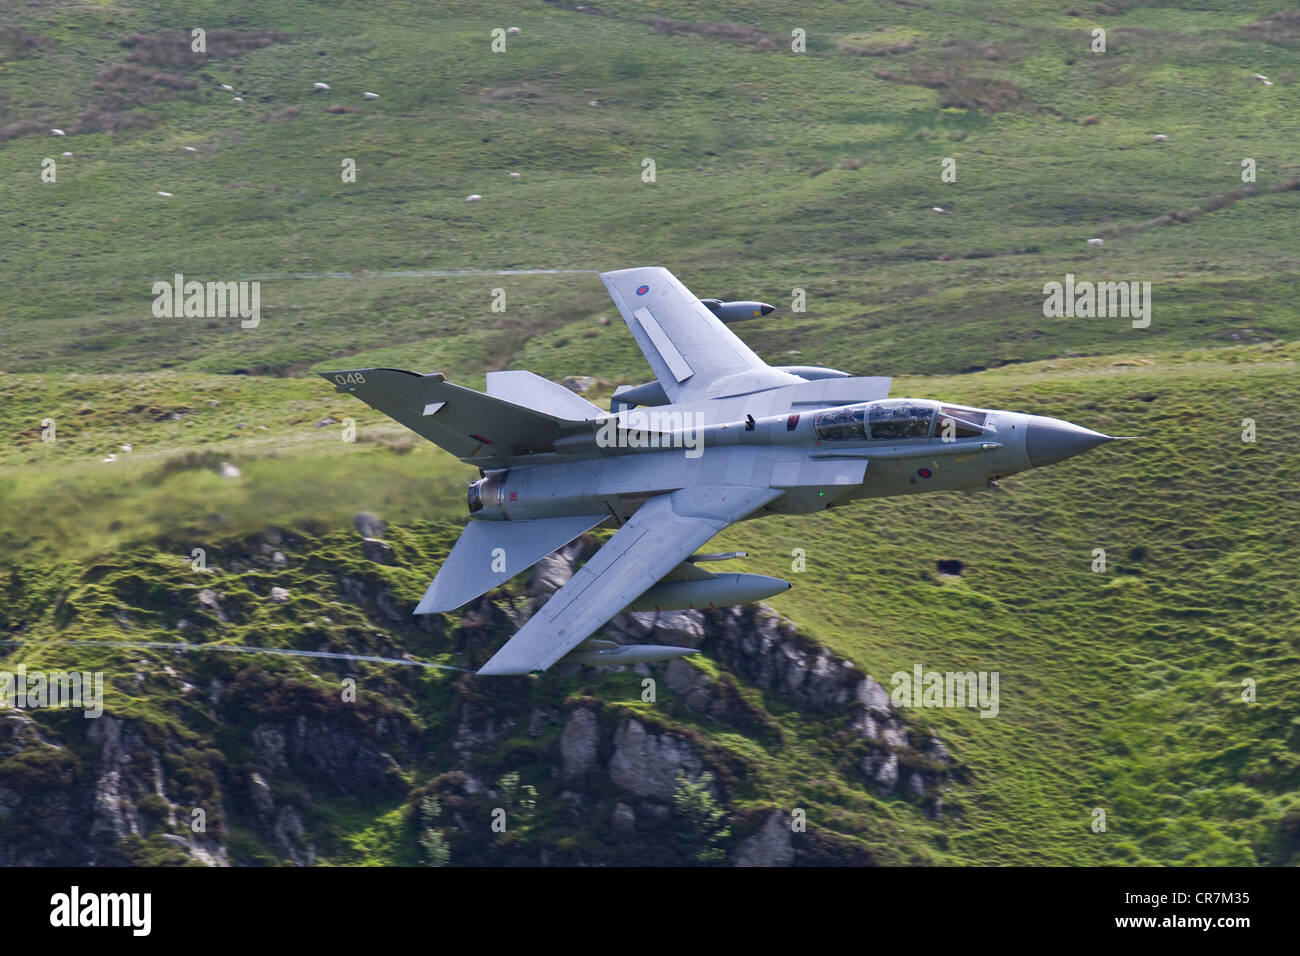 Un Tornado de la RAF volant dans la boucle de Mach au Pays de Galles. Prises de CAD à l'Ouest. Banque D'Images